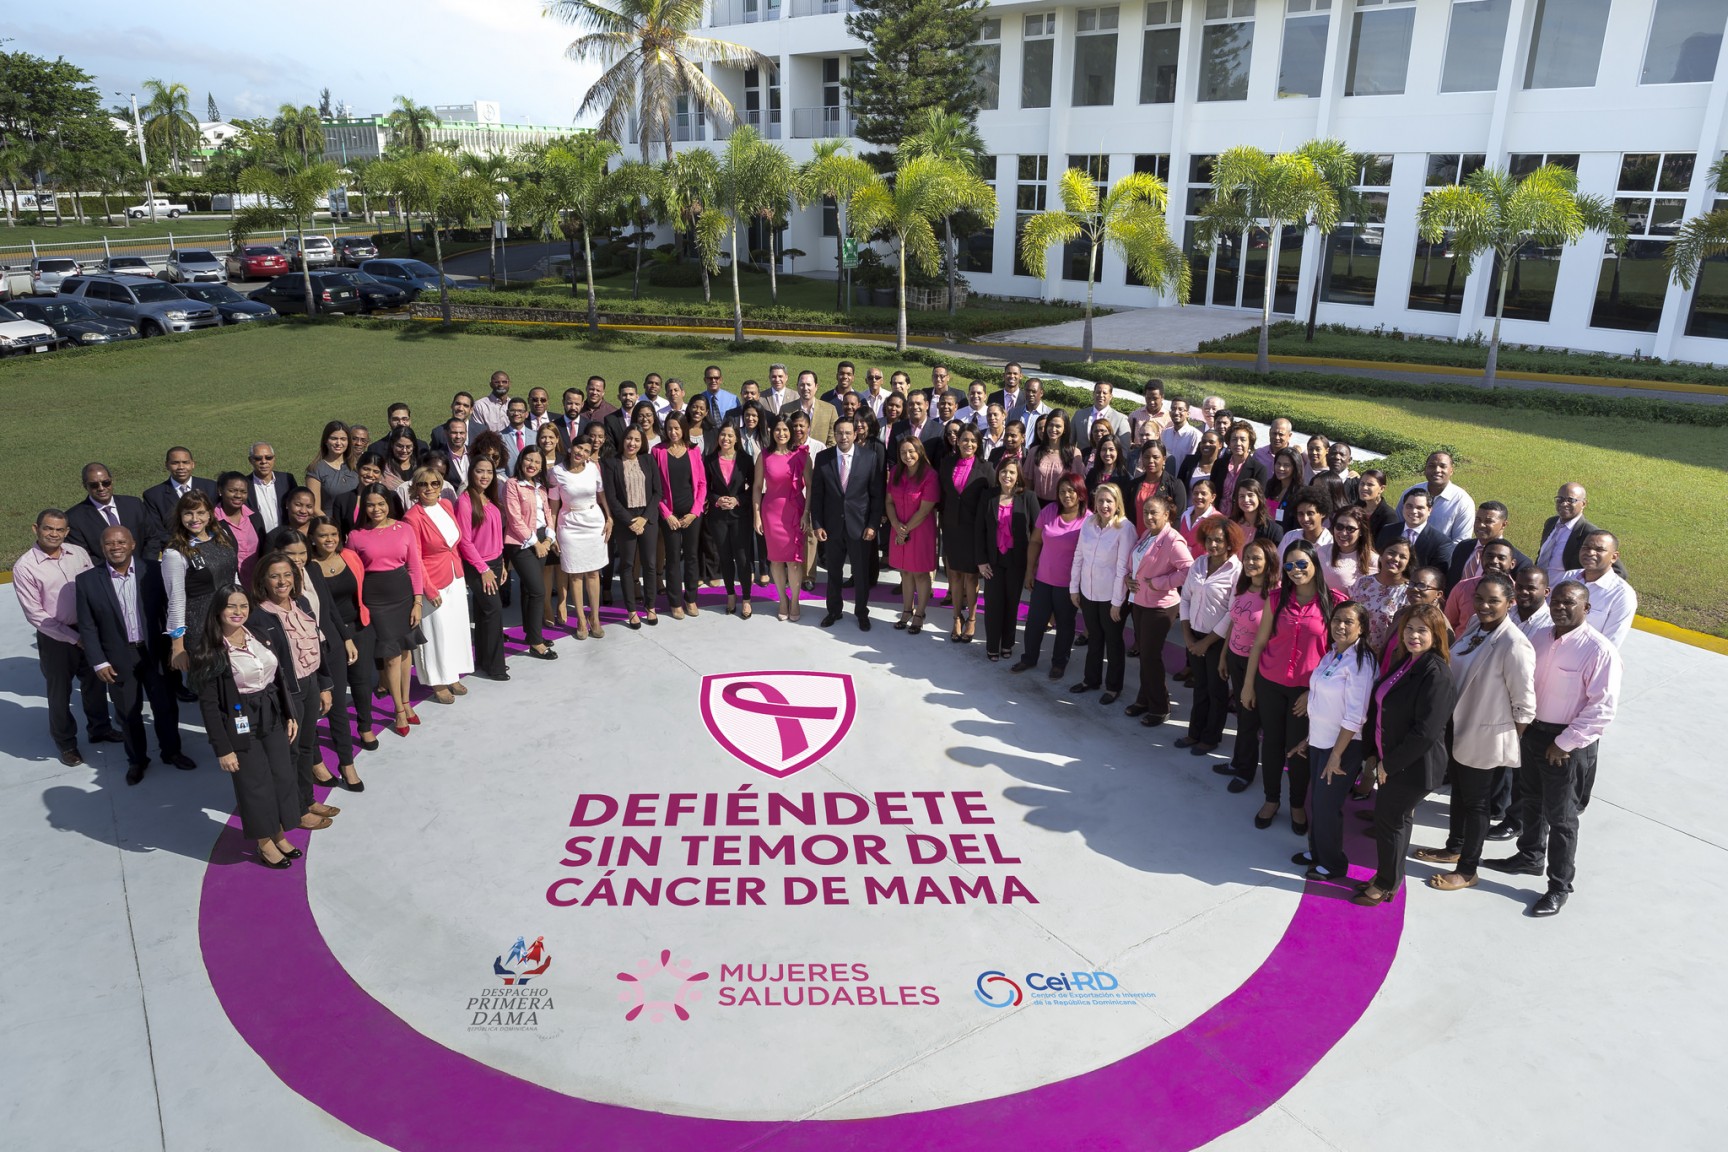 REPÚBLICA DOMINICANA: CEI-RD realiza actividades contra cáncer de mama; hará operativo por salud de las mujeres